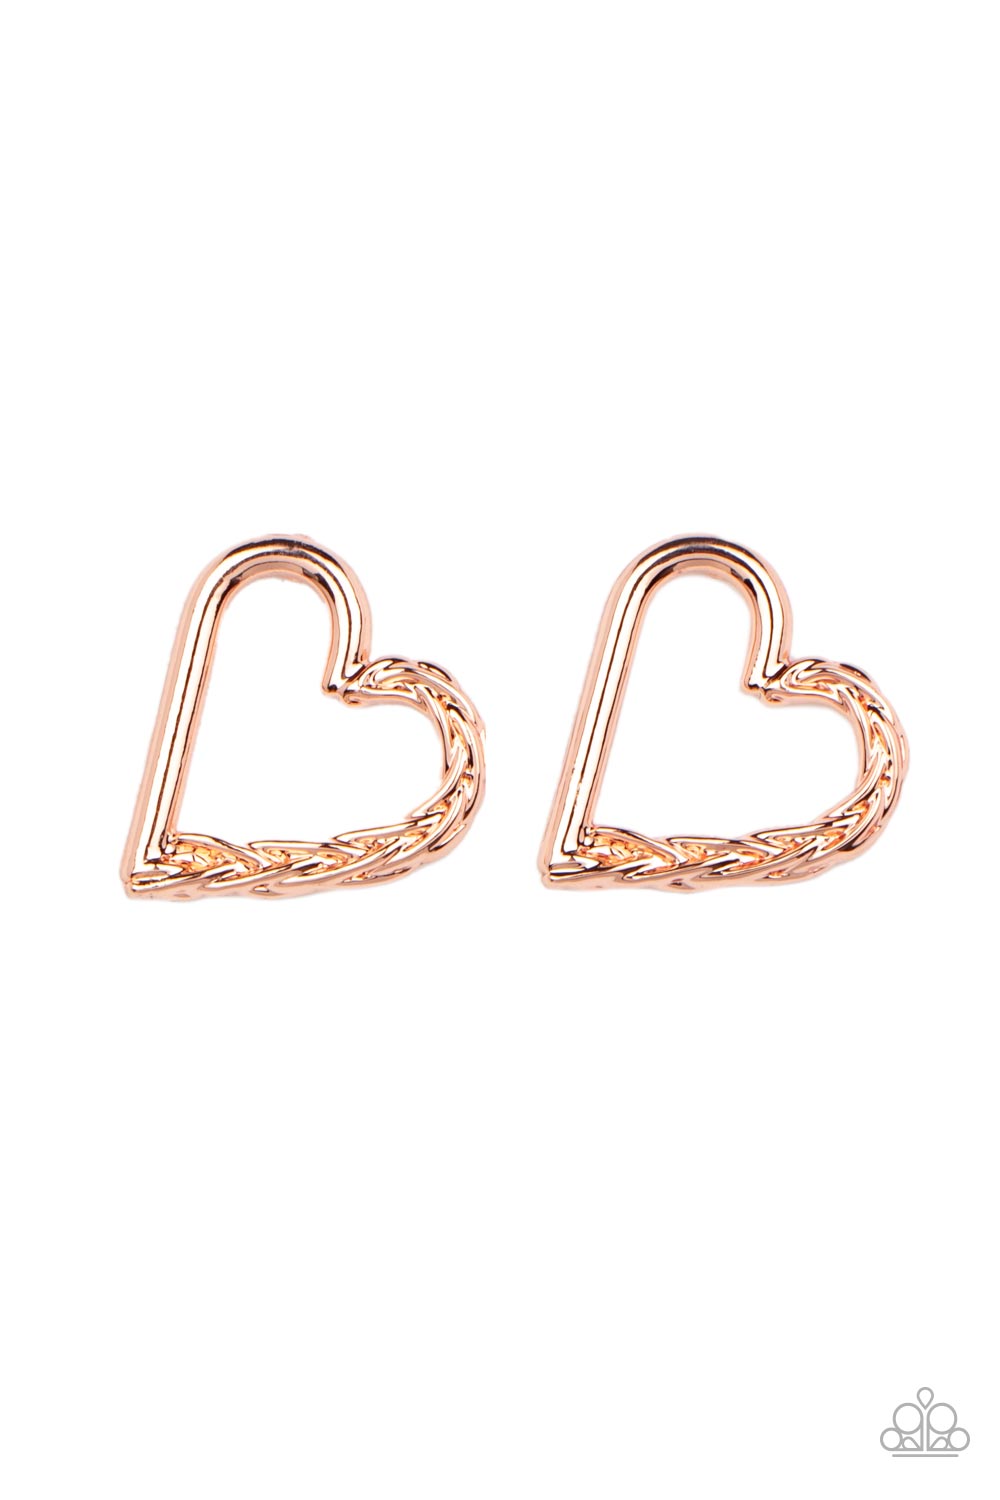 Cupid, Who? - Copper Earrings